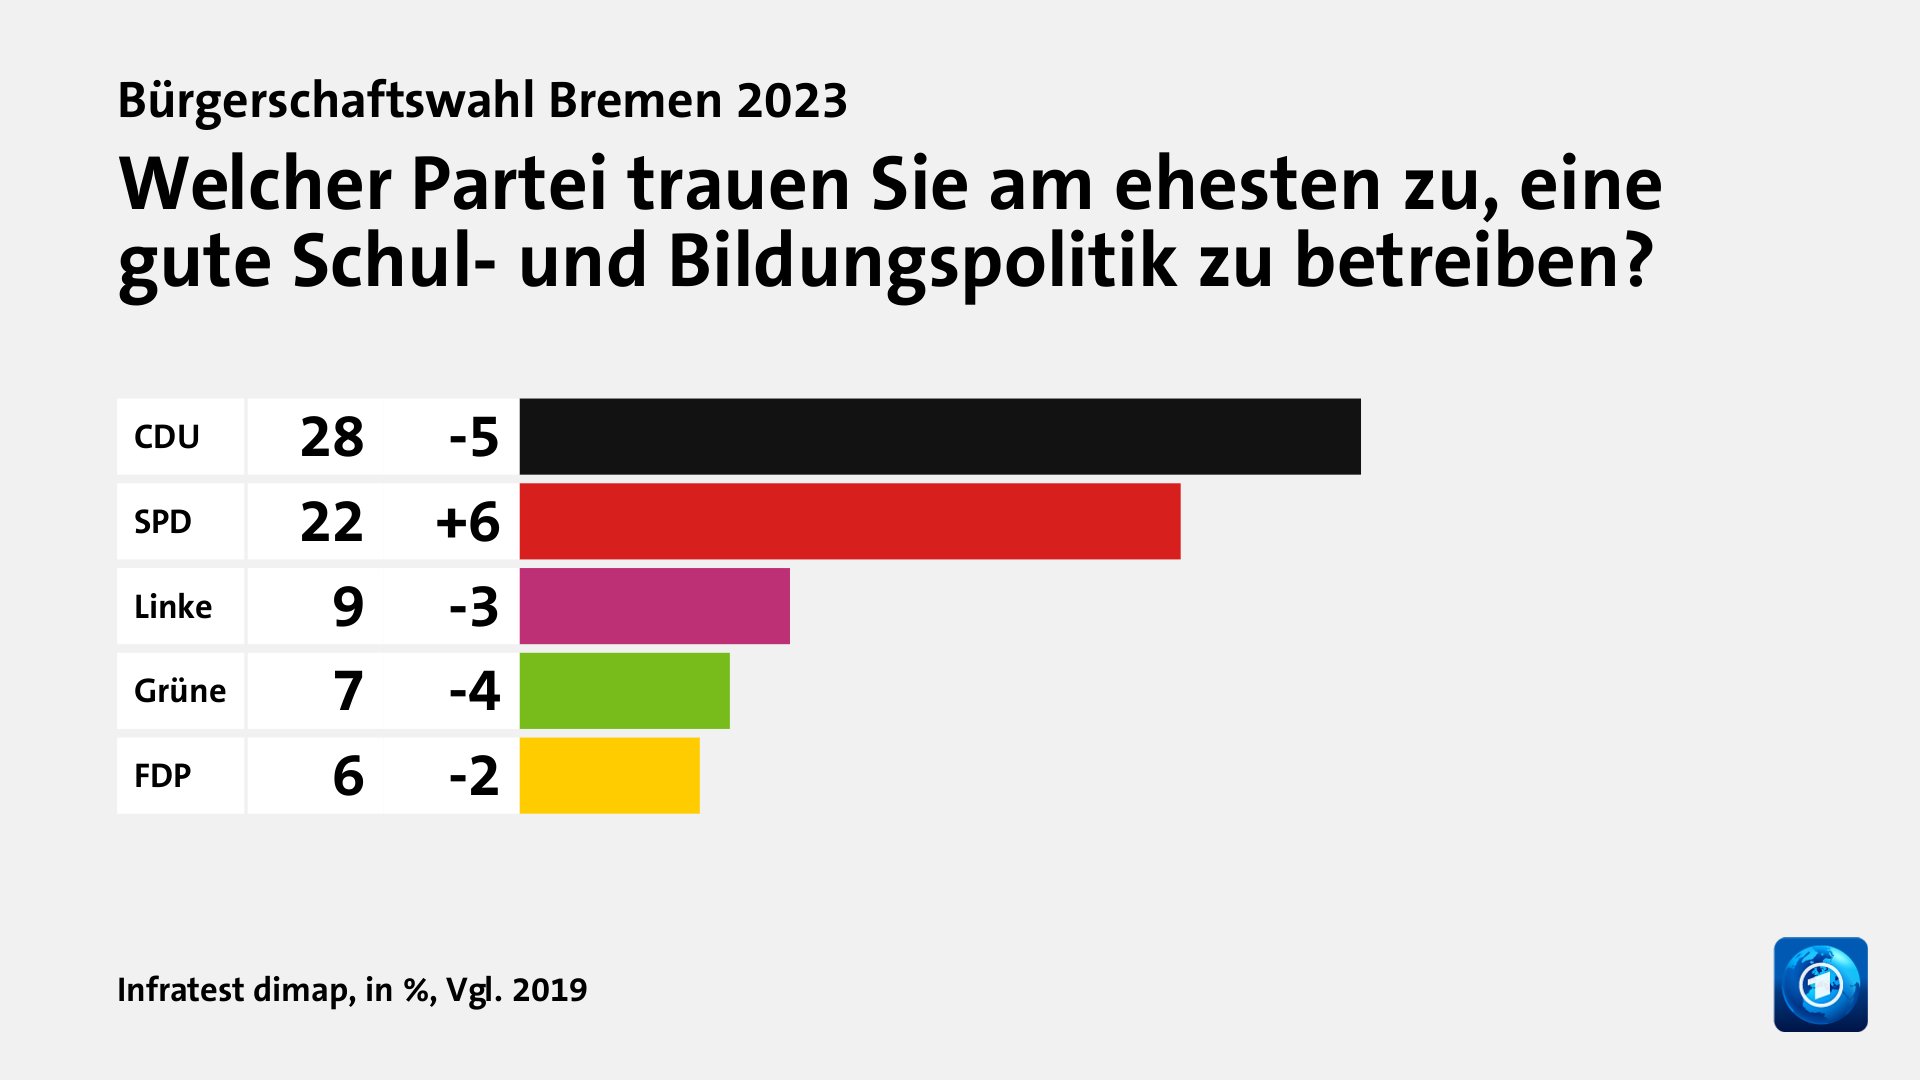 Welcher Partei trauen Sie am ehesten zu, eine gute Schul- und Bildungspolitik zu betreiben?, in %, Vgl. 2019: CDU 28, SPD 22, Linke 9, Grüne 7, FDP 6, Quelle: Infratest dimap